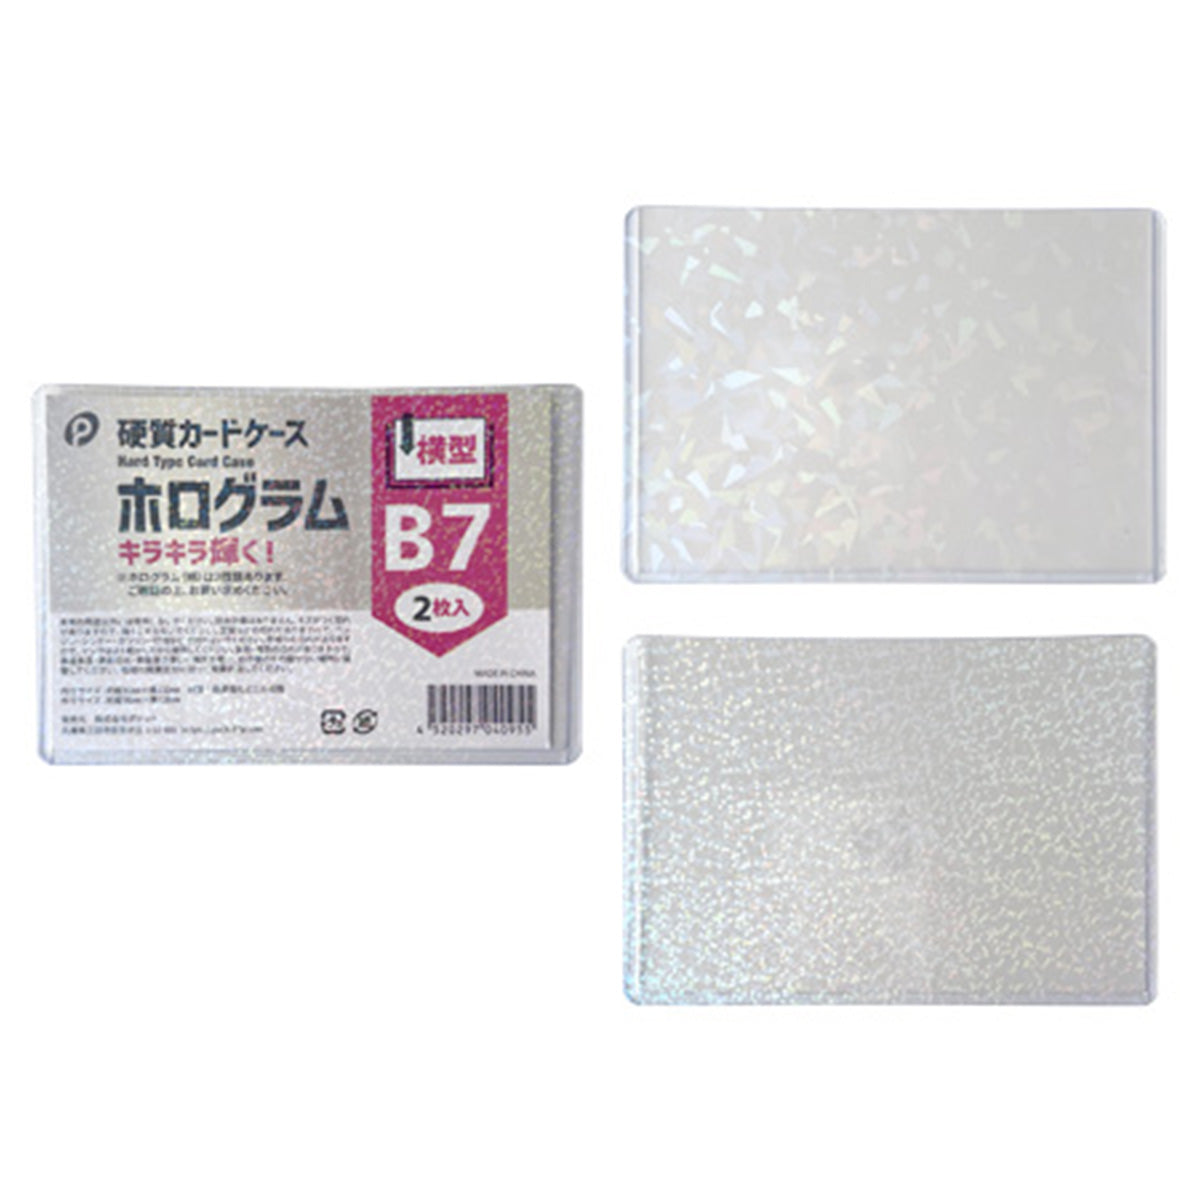 ホログラム硬質カードケース横型 B7 2枚入  352129